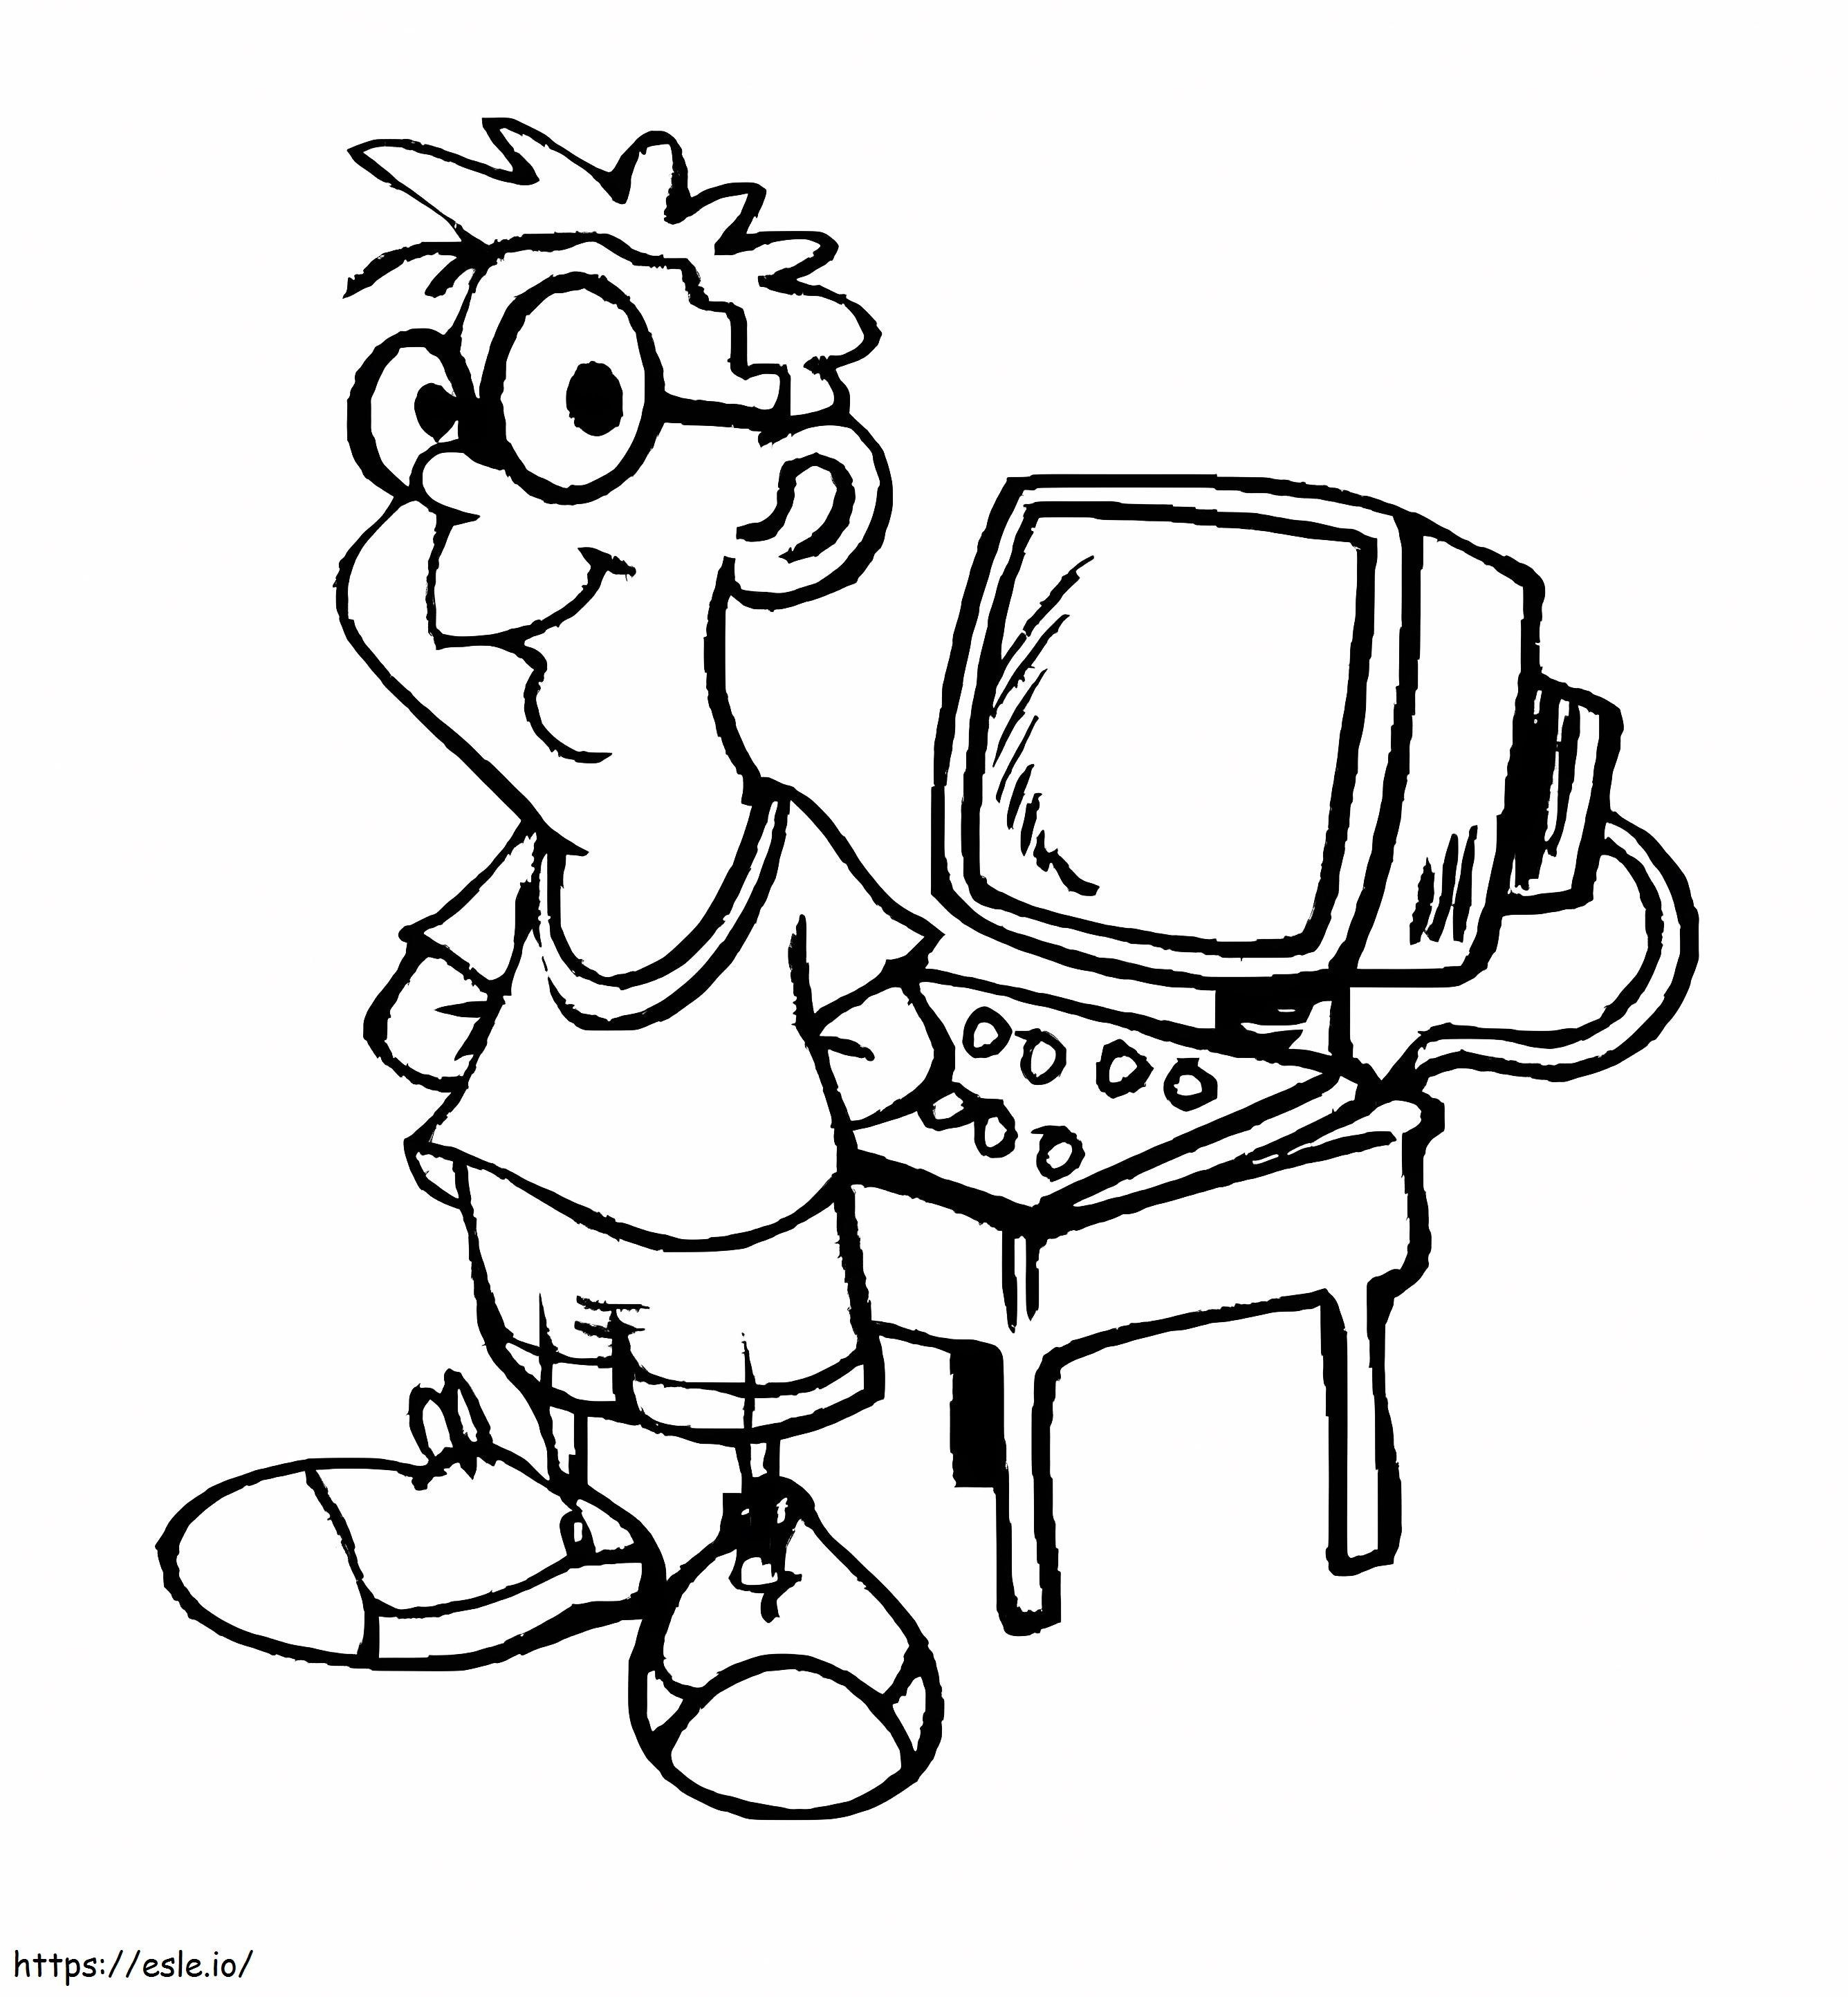 Junge mit Computer ausmalbilder